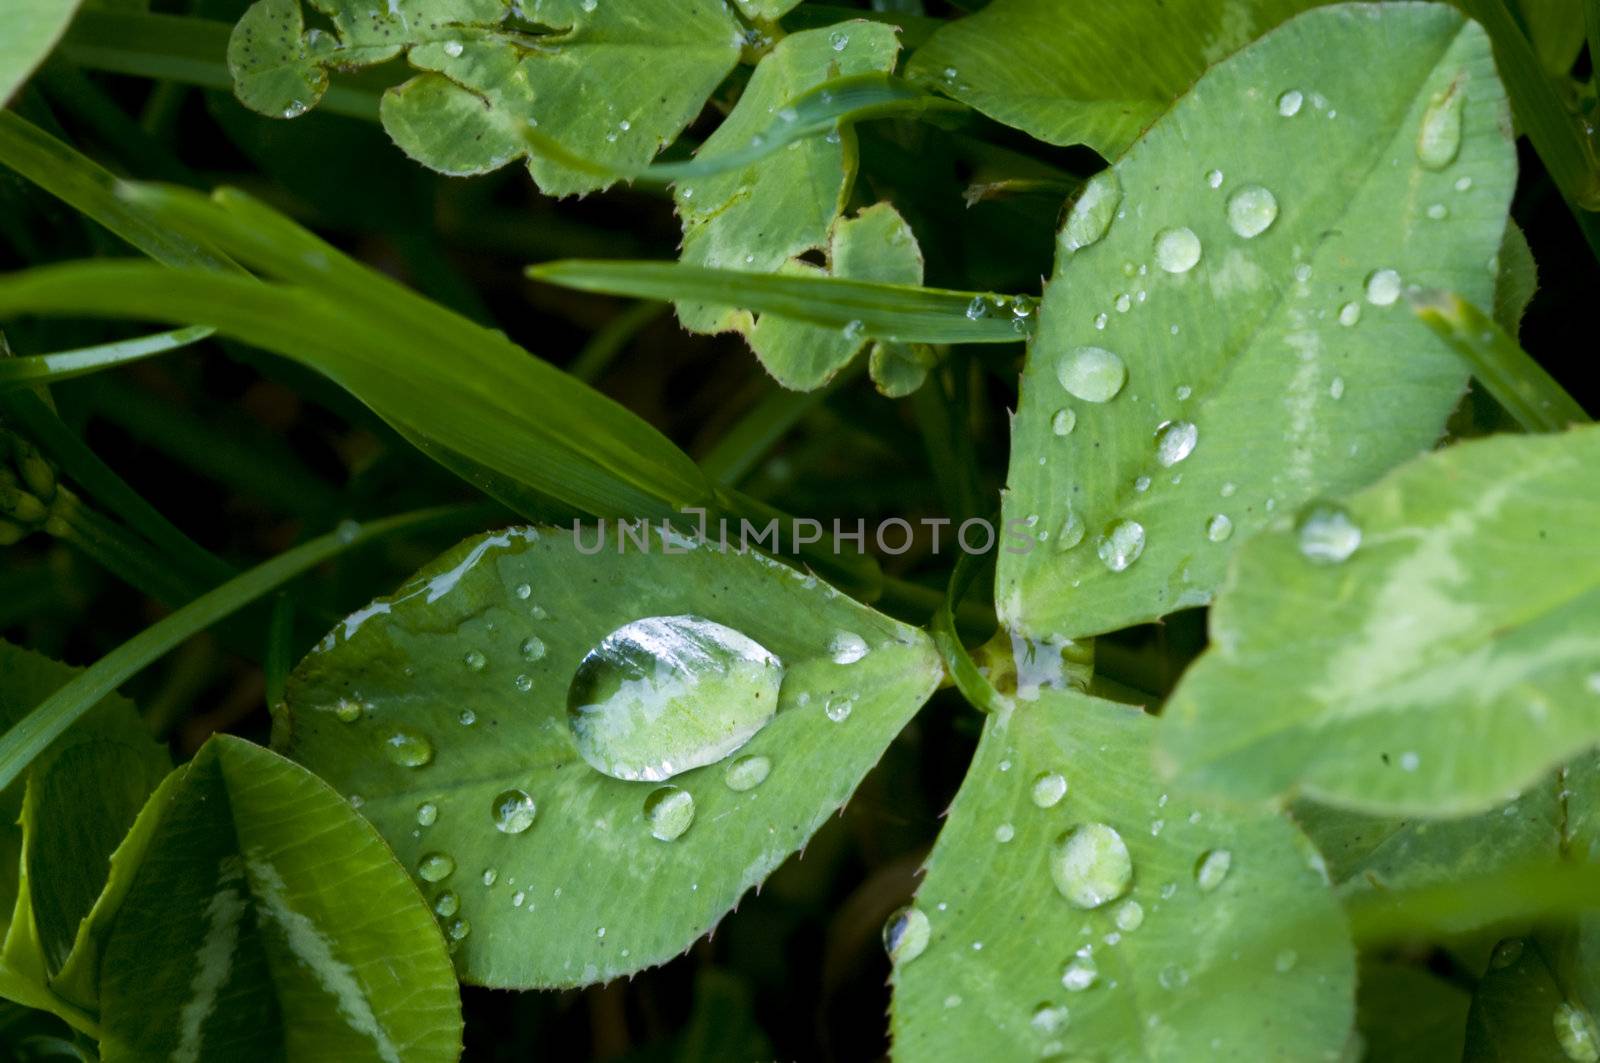 clover closeup after the rain